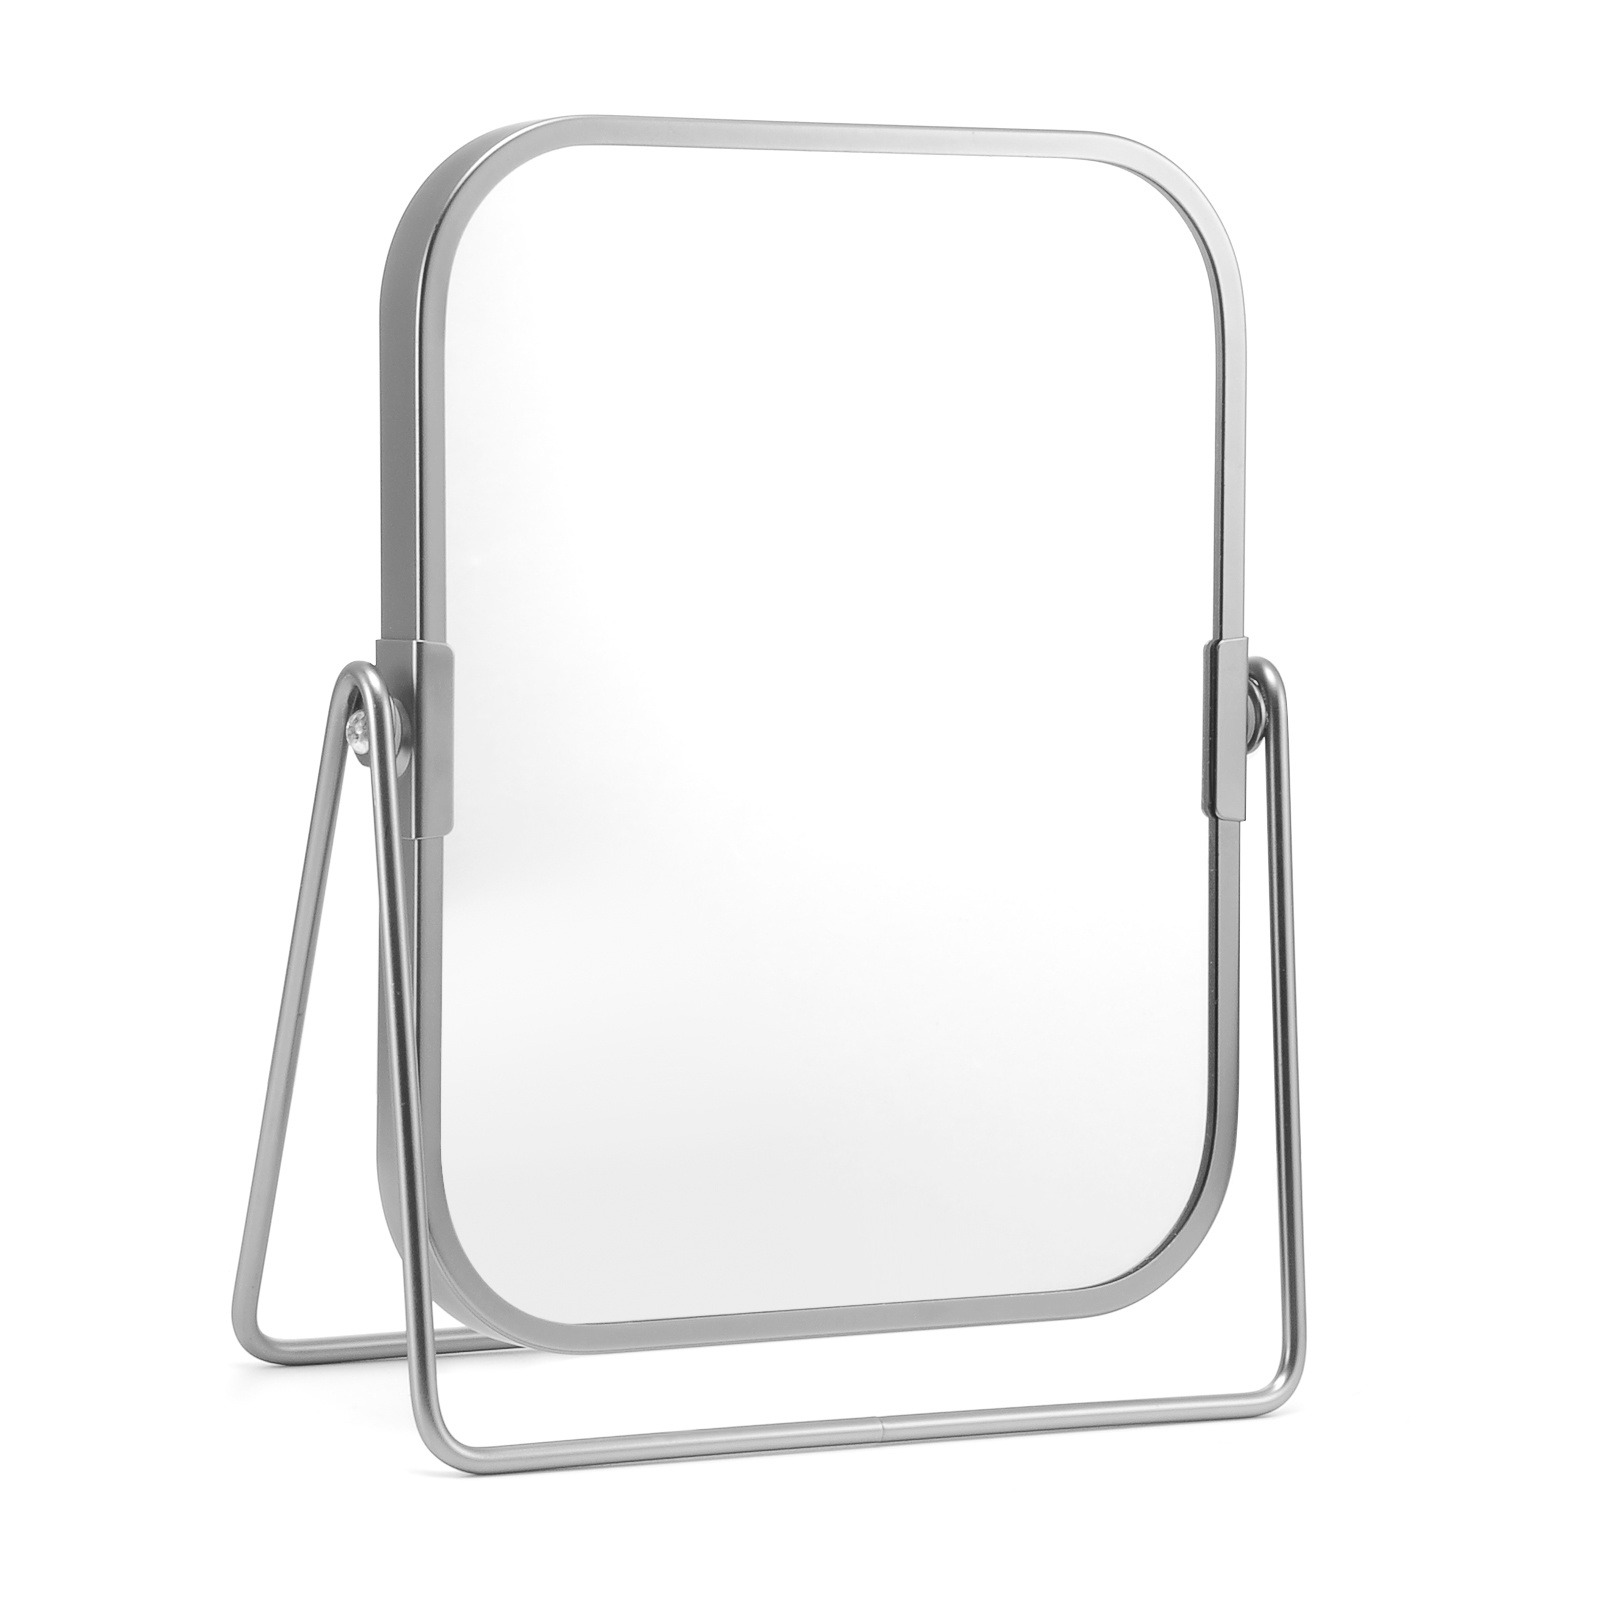 桌面梳妆镜子方形支架台镜厂家定制金属台式镜子